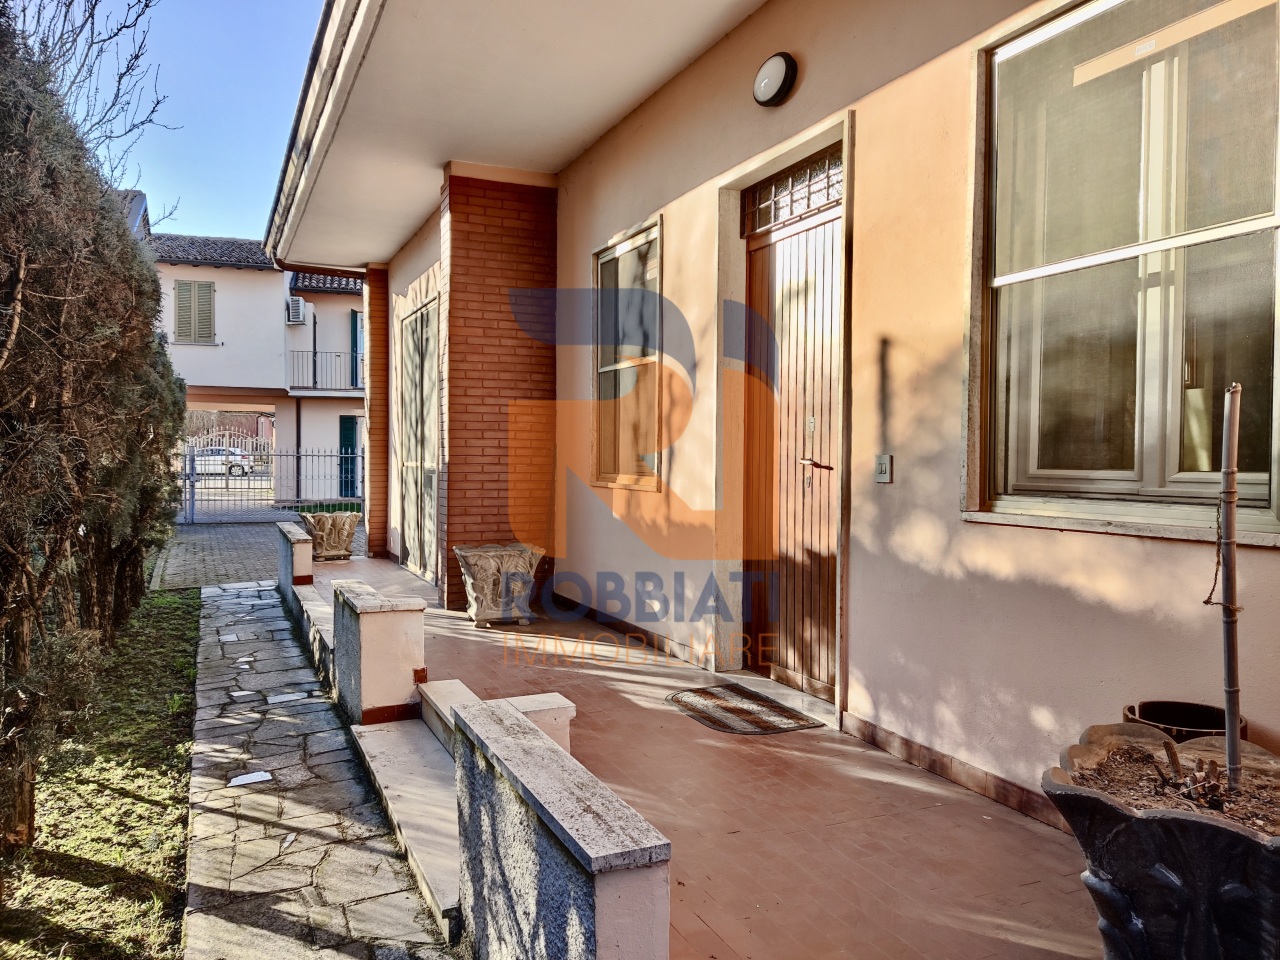 Villa in vendita a San Martino Siccomario, 3 locali, prezzo € 210.000 | PortaleAgenzieImmobiliari.it